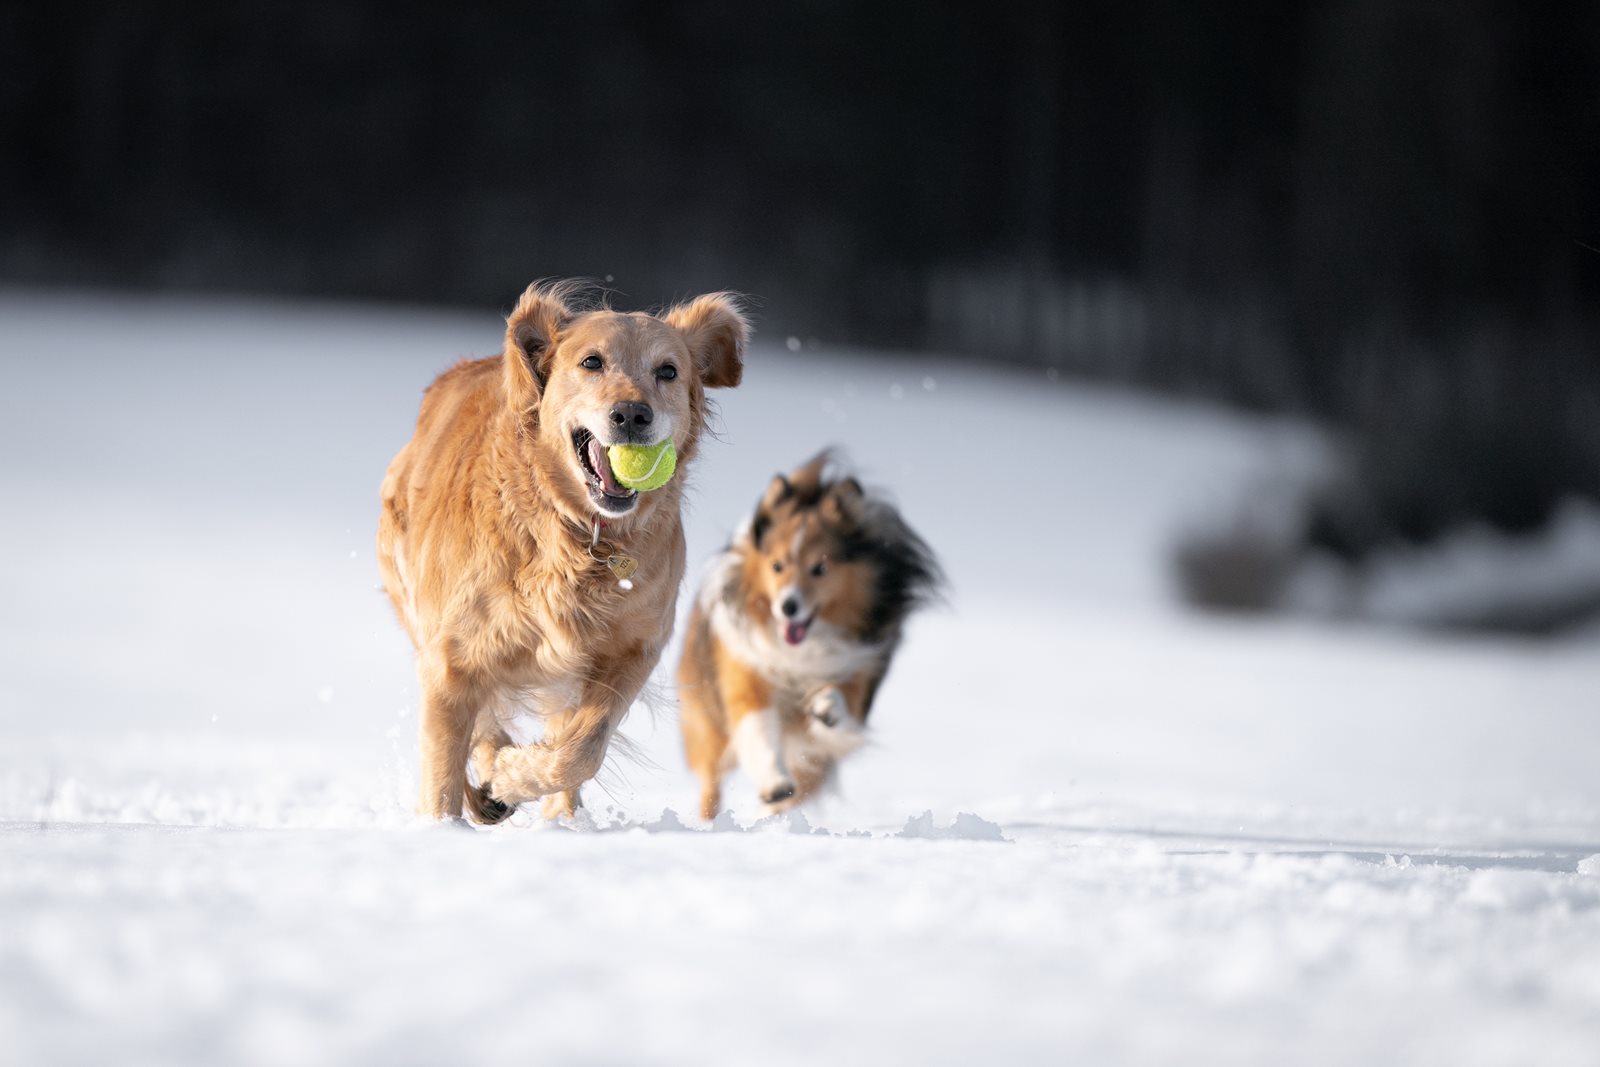 Dogs plaing in a snowy feild.